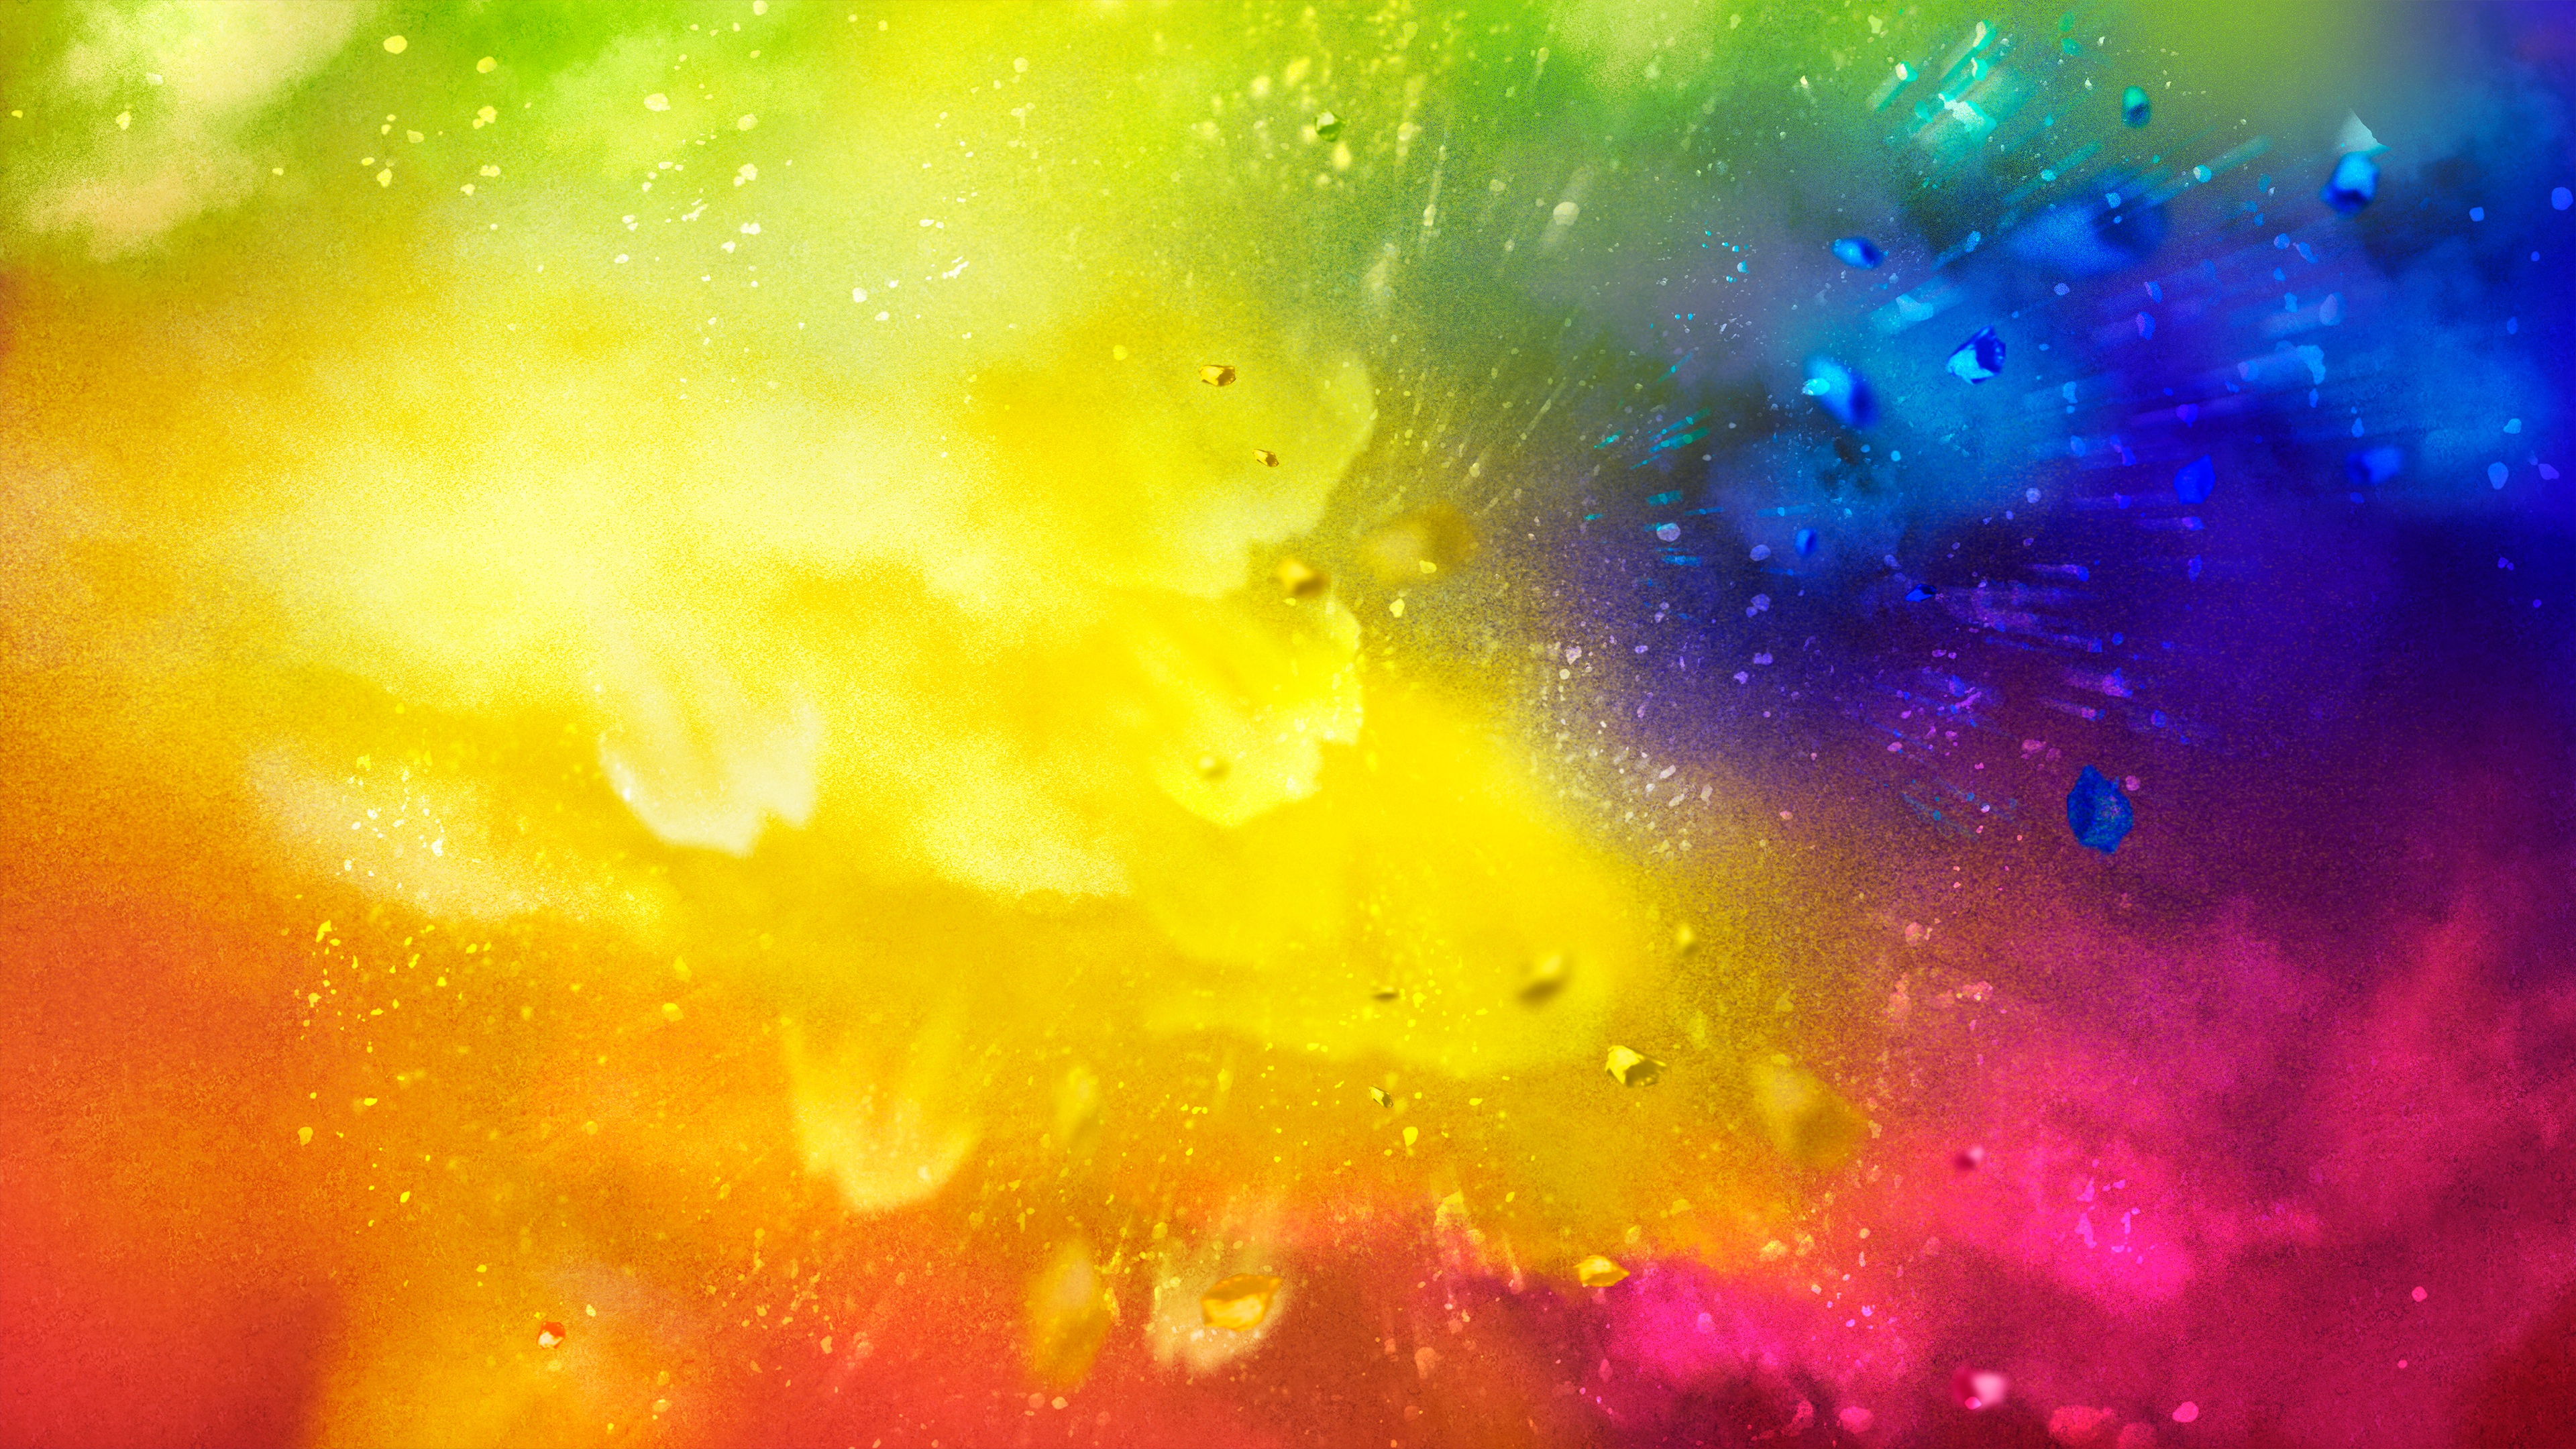 홀리 벽지 hd 1080p,하늘,초록,노랑,빛,화려 함